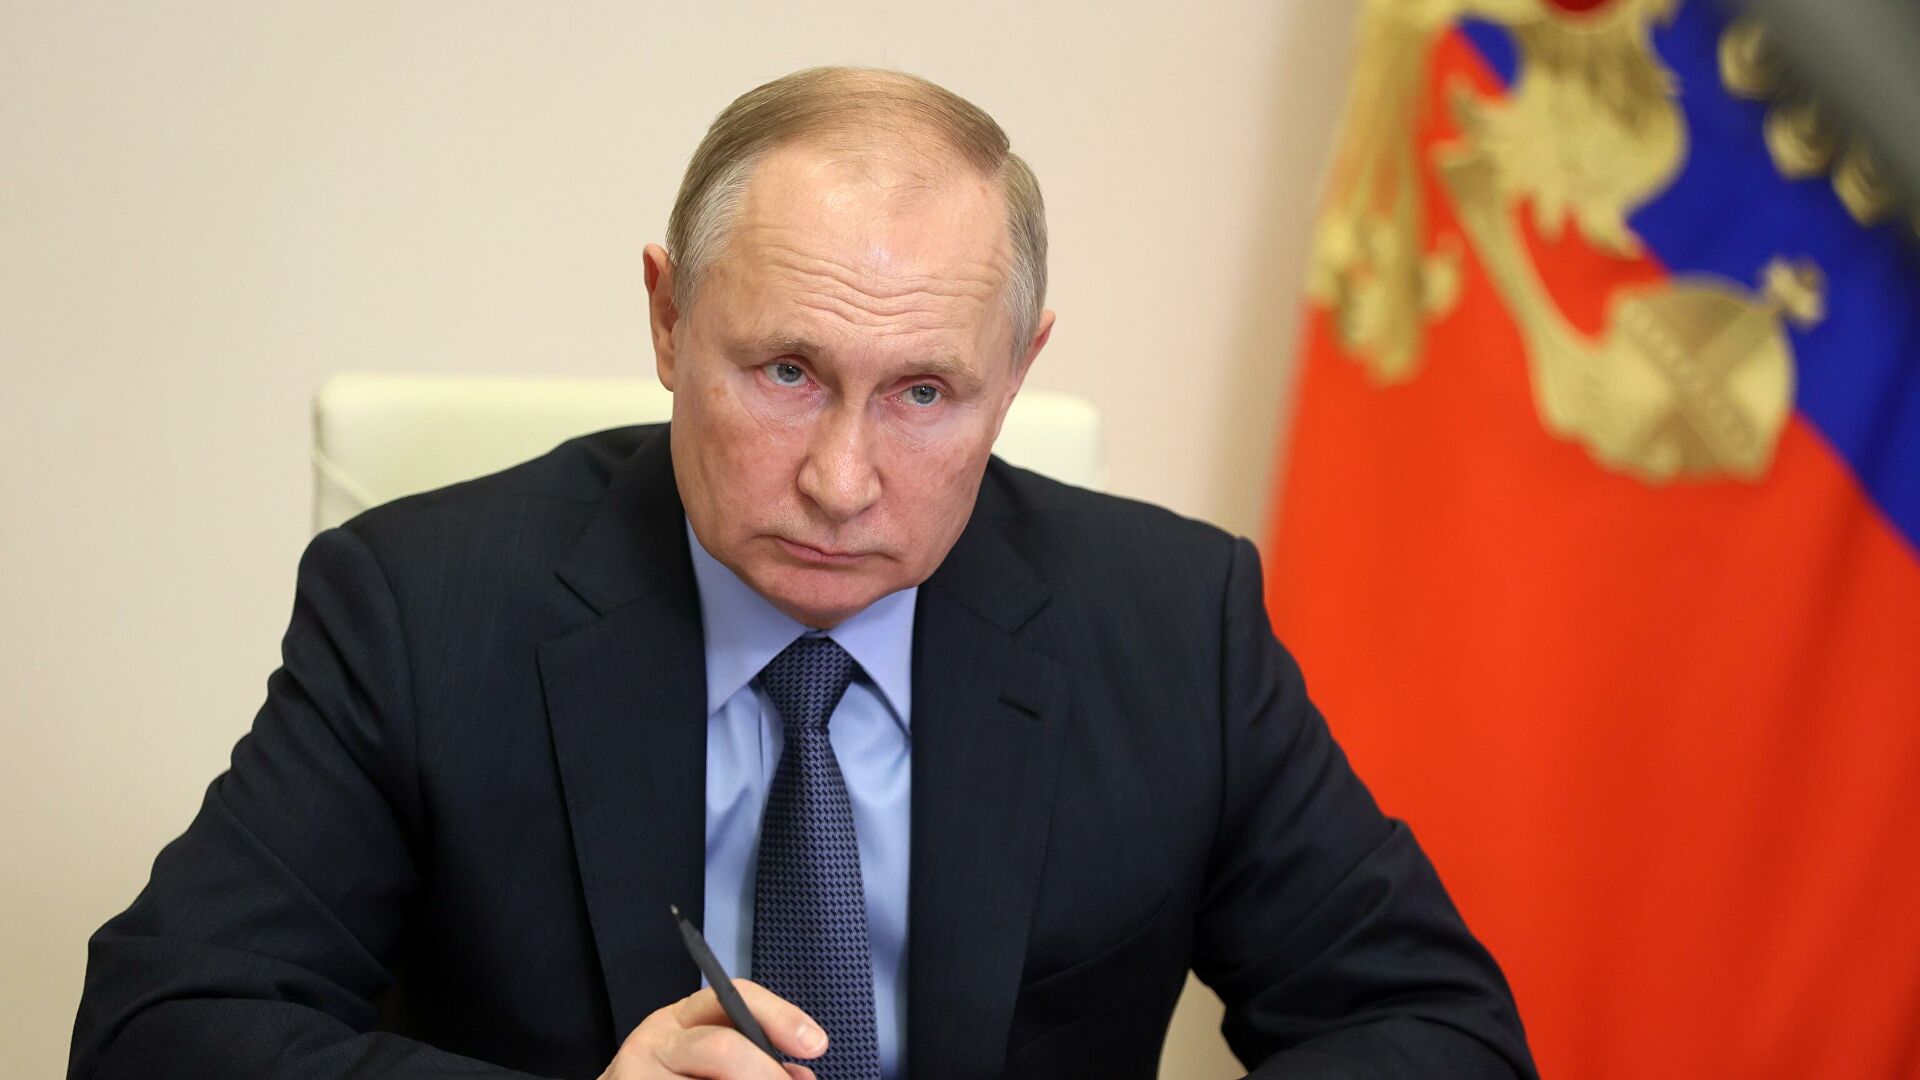 Putin, yedek askerlerin eğitime alınması için karar imzaladı